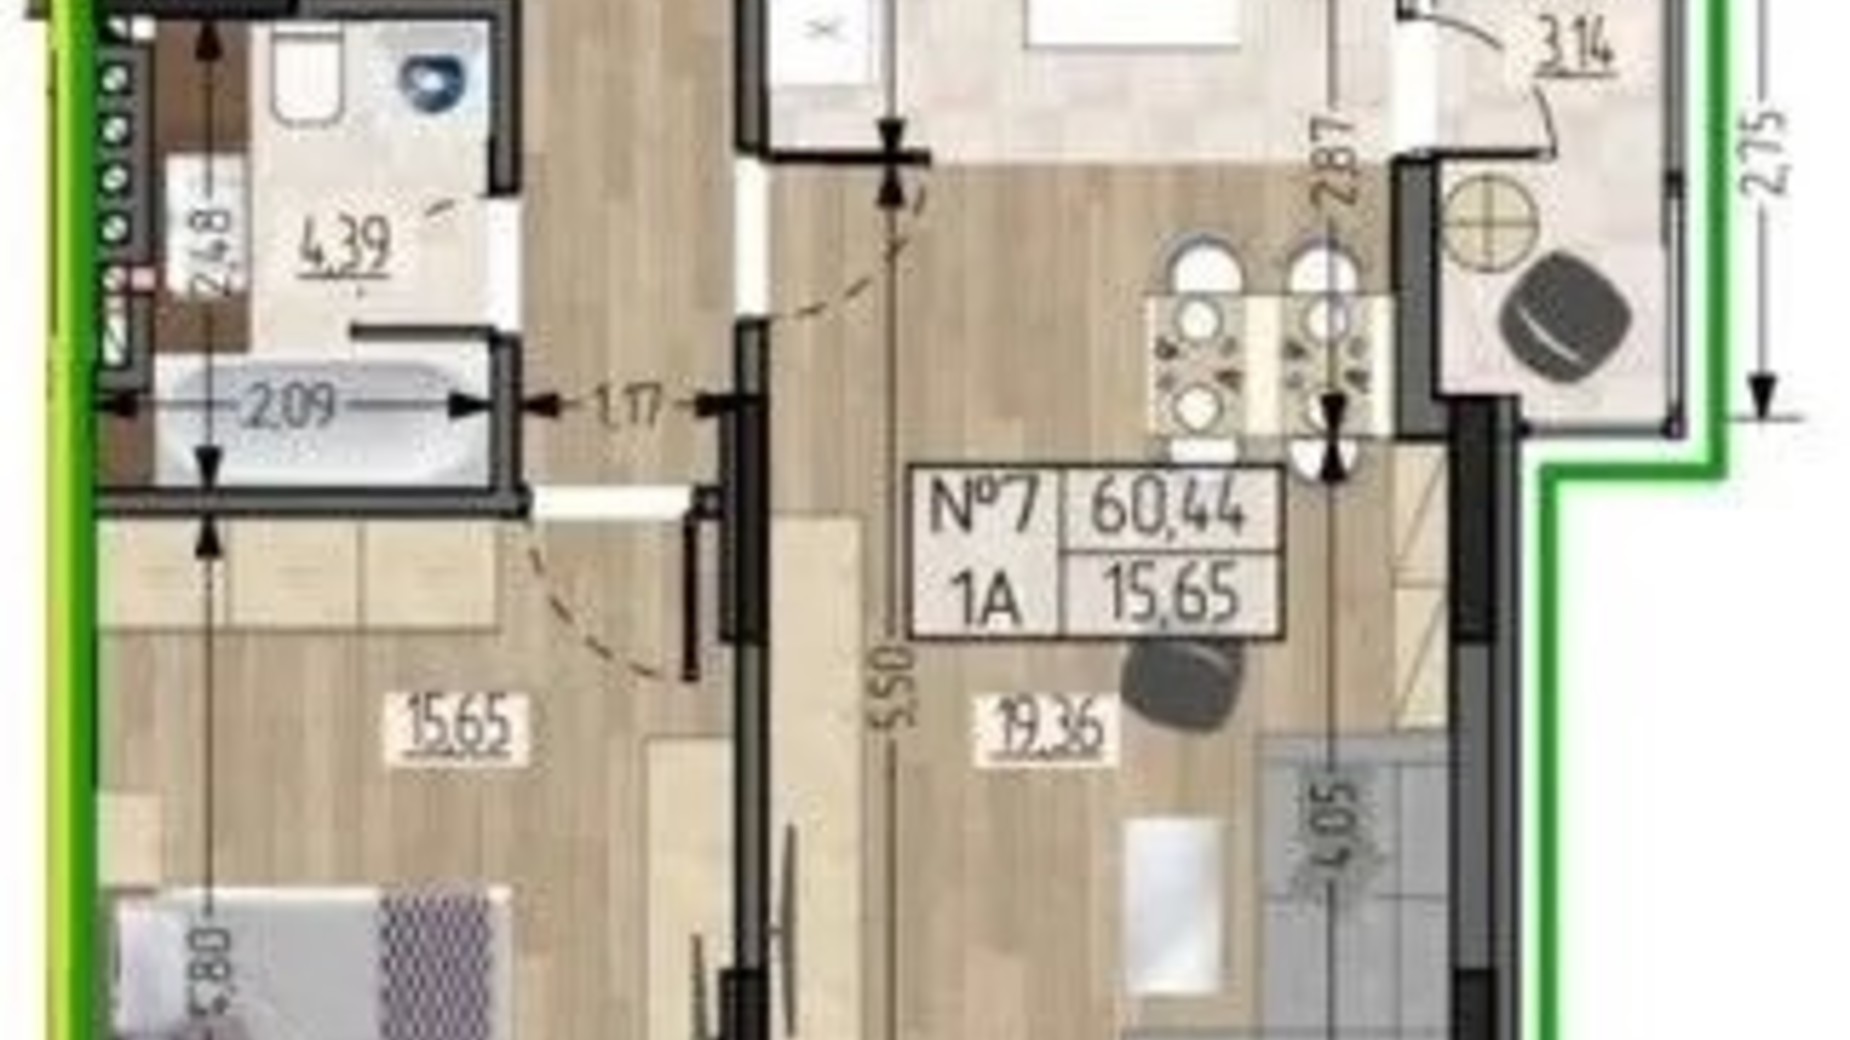 Планировка 1-комнатной квартиры в ЖСК Полетаева 60.44 м², фото 622456